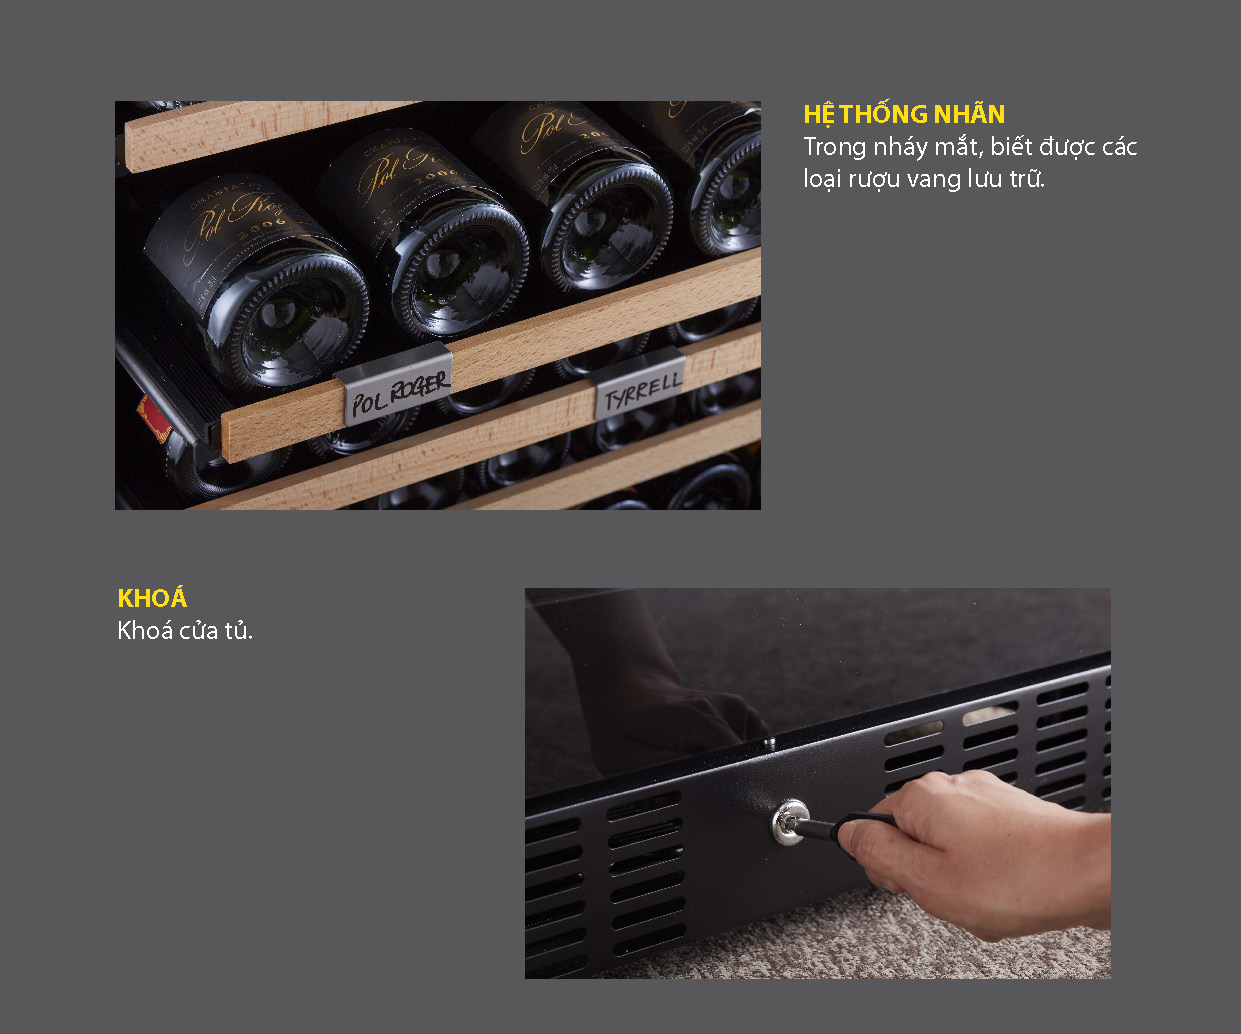 Thương hiệu KADEKA cung cấp dòng sản phẩm tủ ướp vang rộng nhất trên thị trường, trữ lượng lưu giữ từ 15 chai